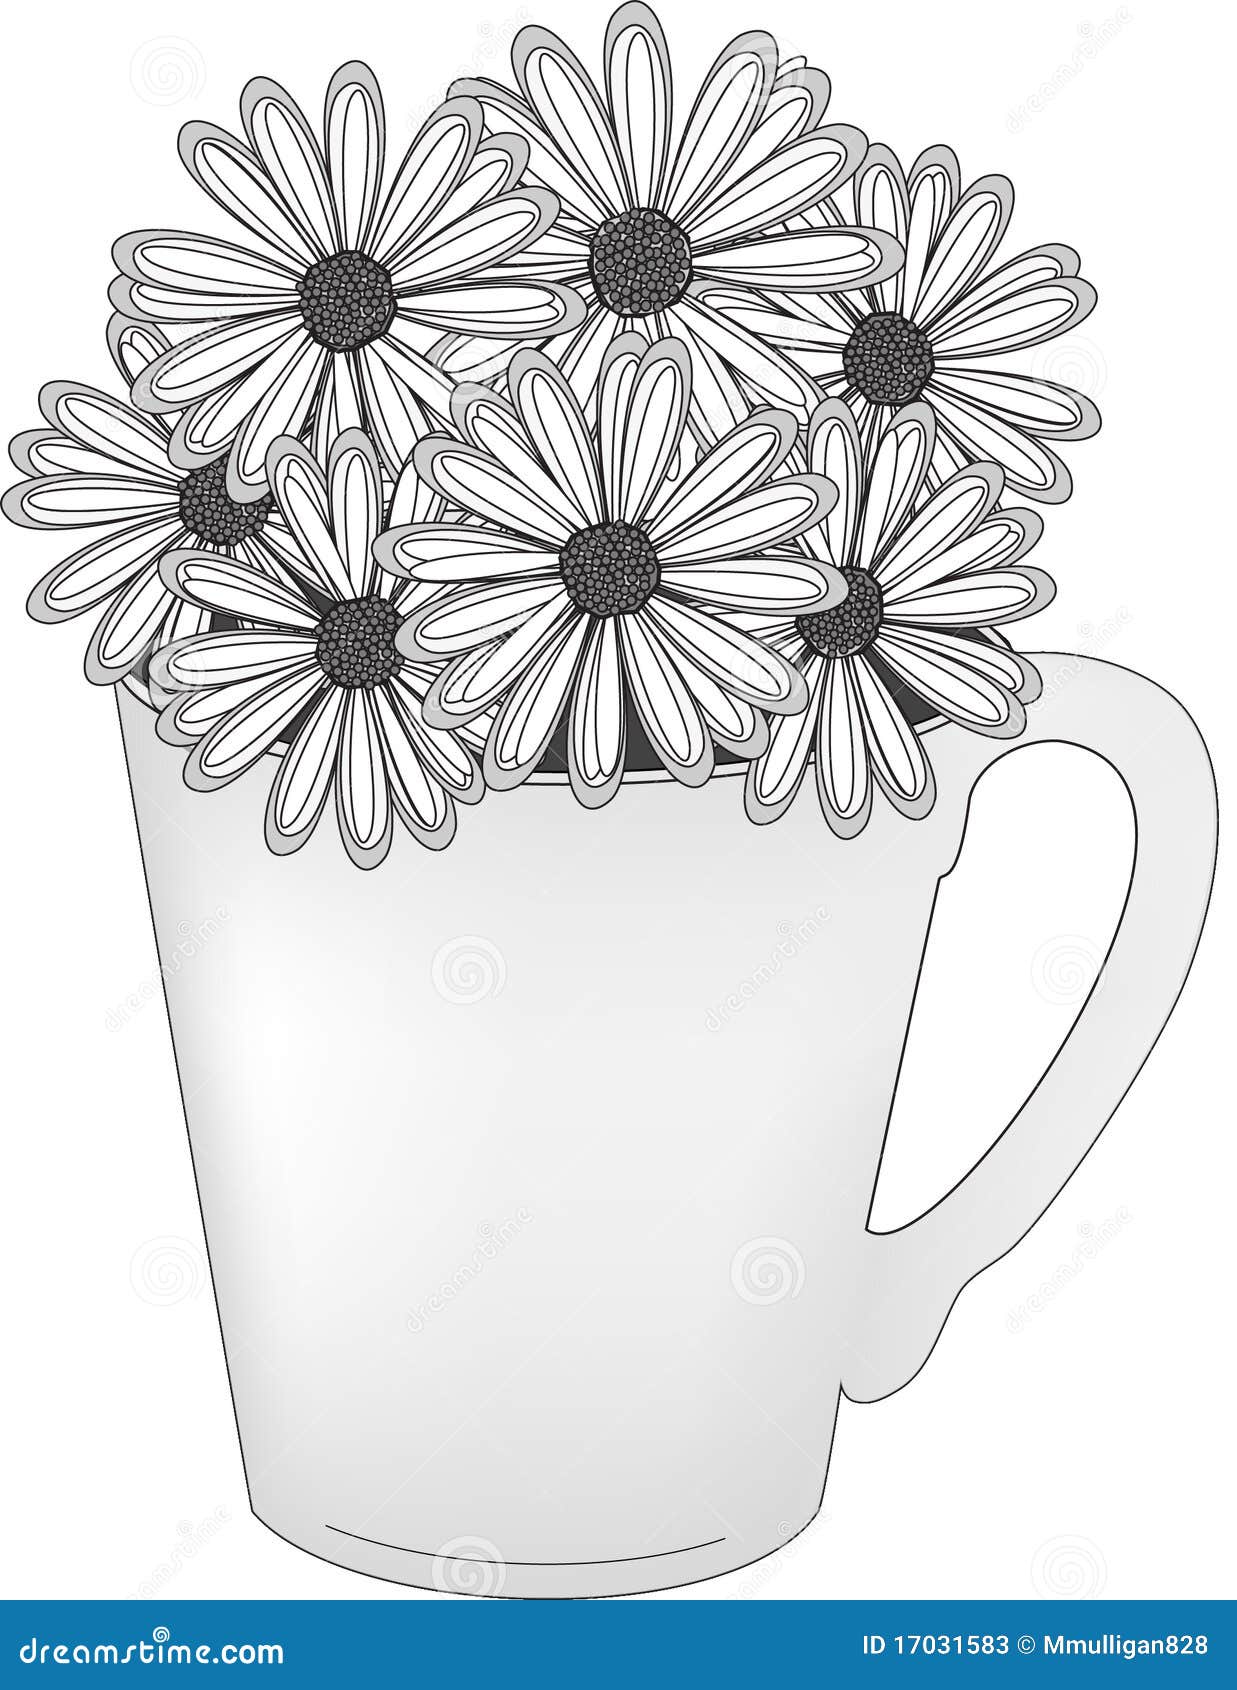 daisies in a mug